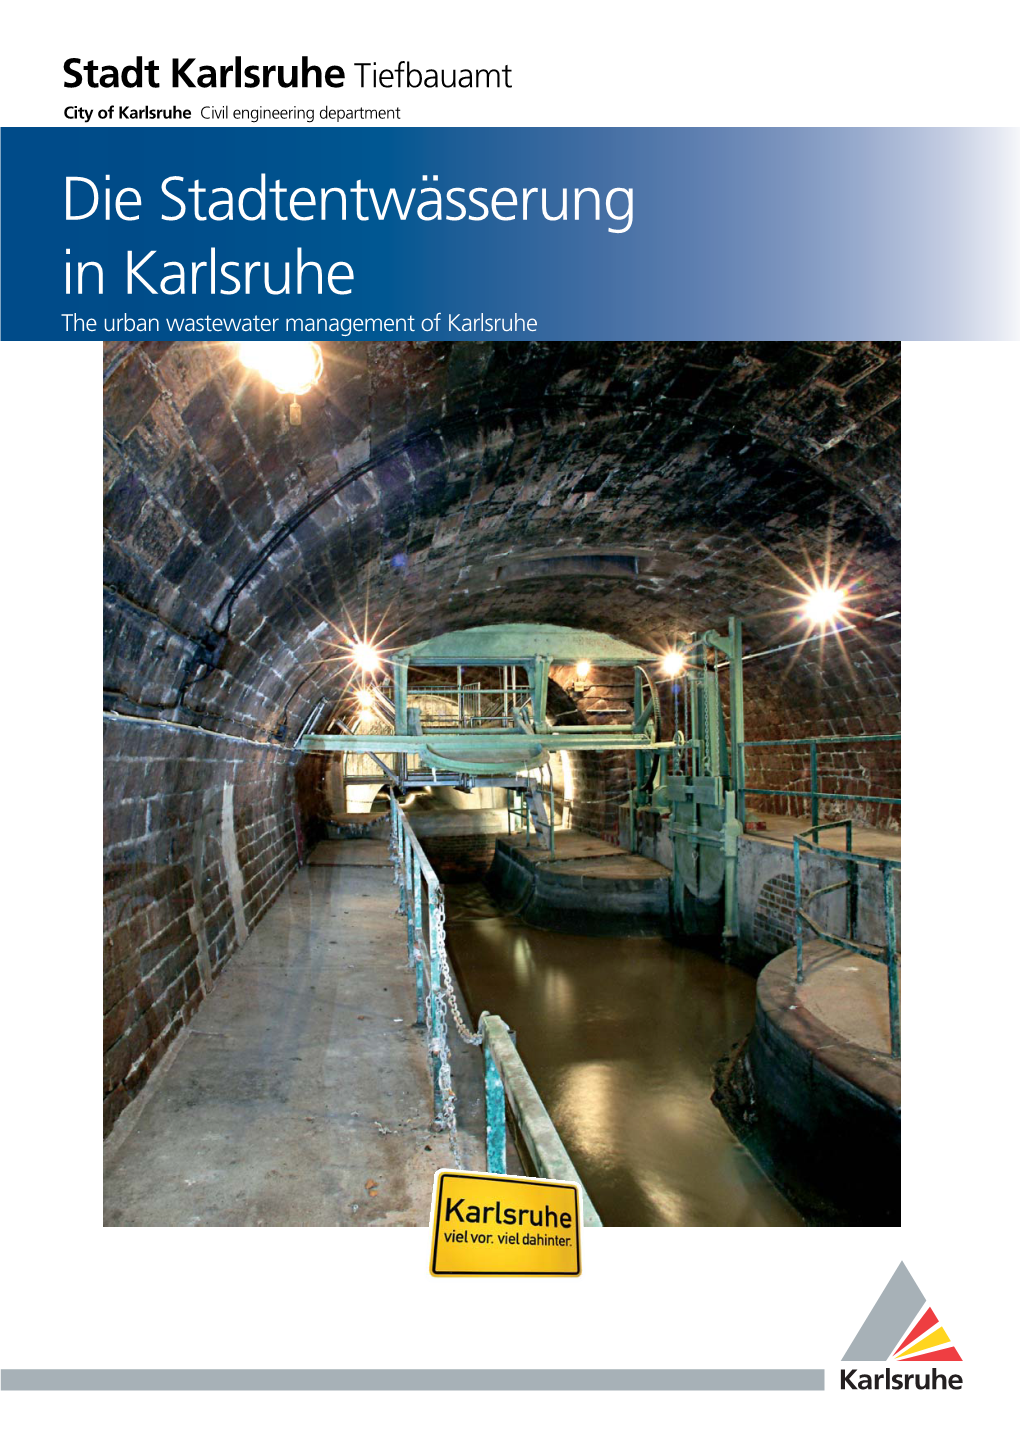 Die Stadtentwässerung in Karlsruhe the Urban Wastewater Management of Karlsruhe Content